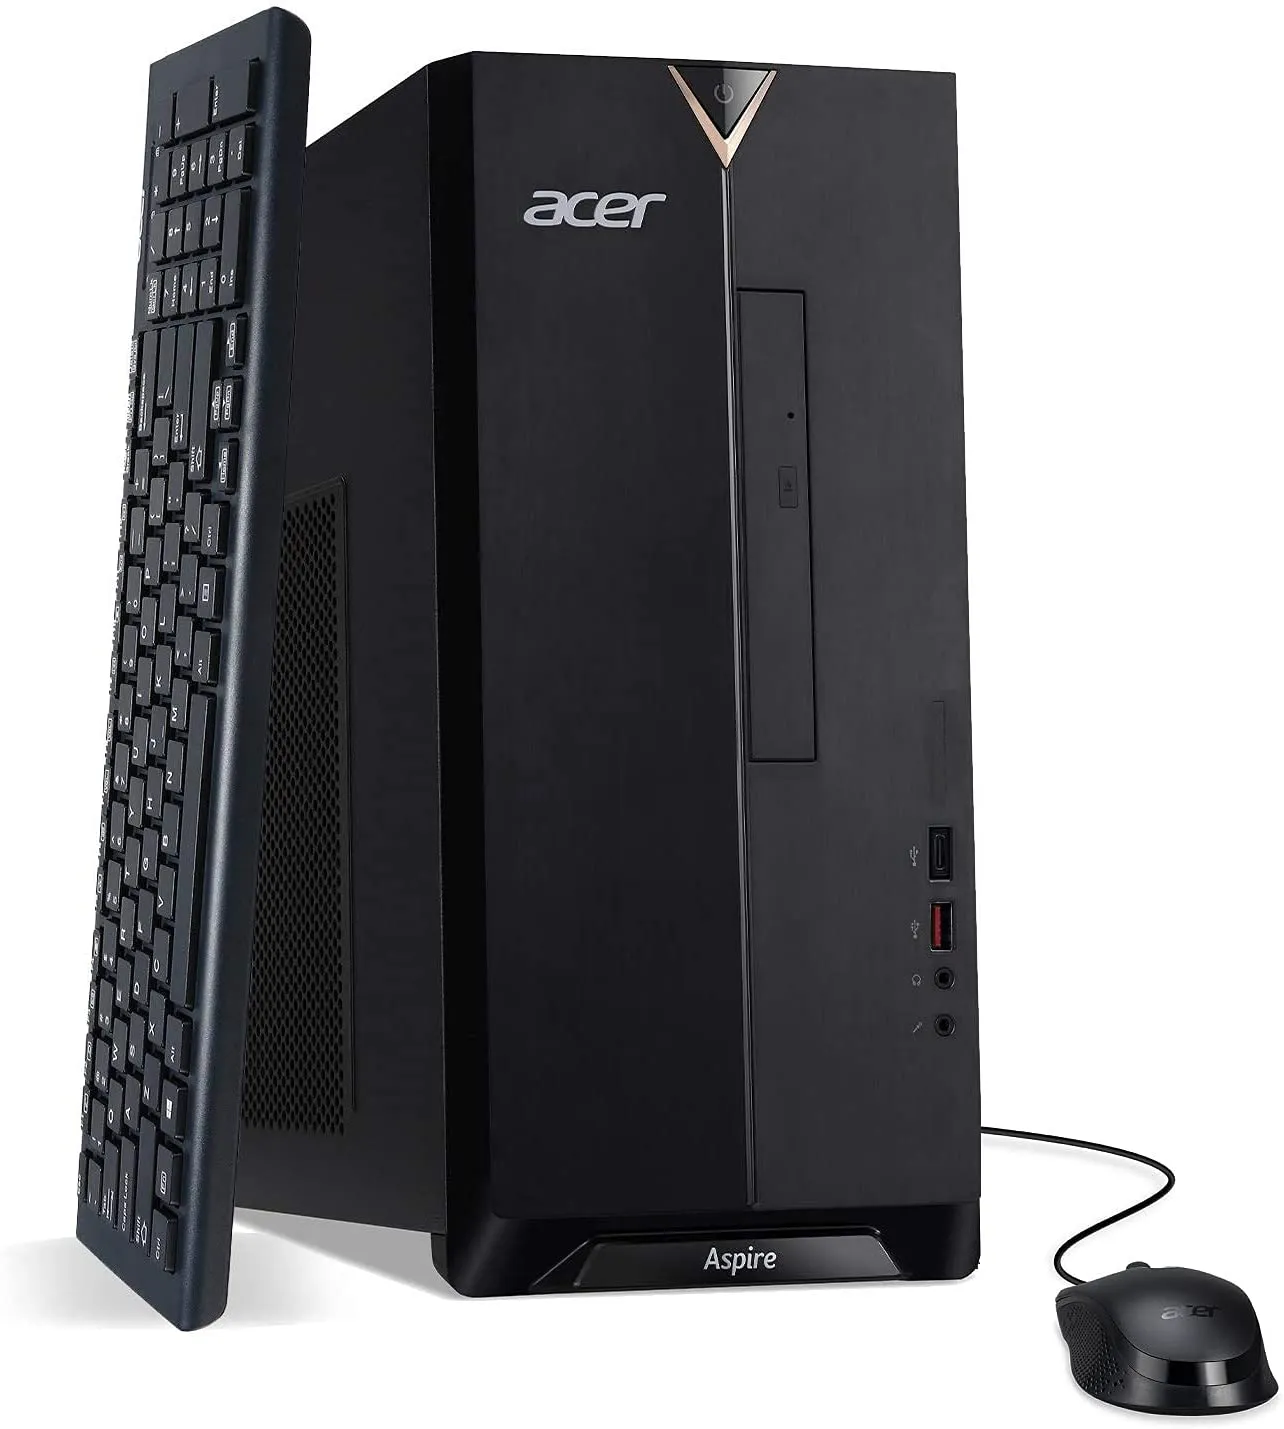 Acer Aspire TC-1660-UA92 Desktop